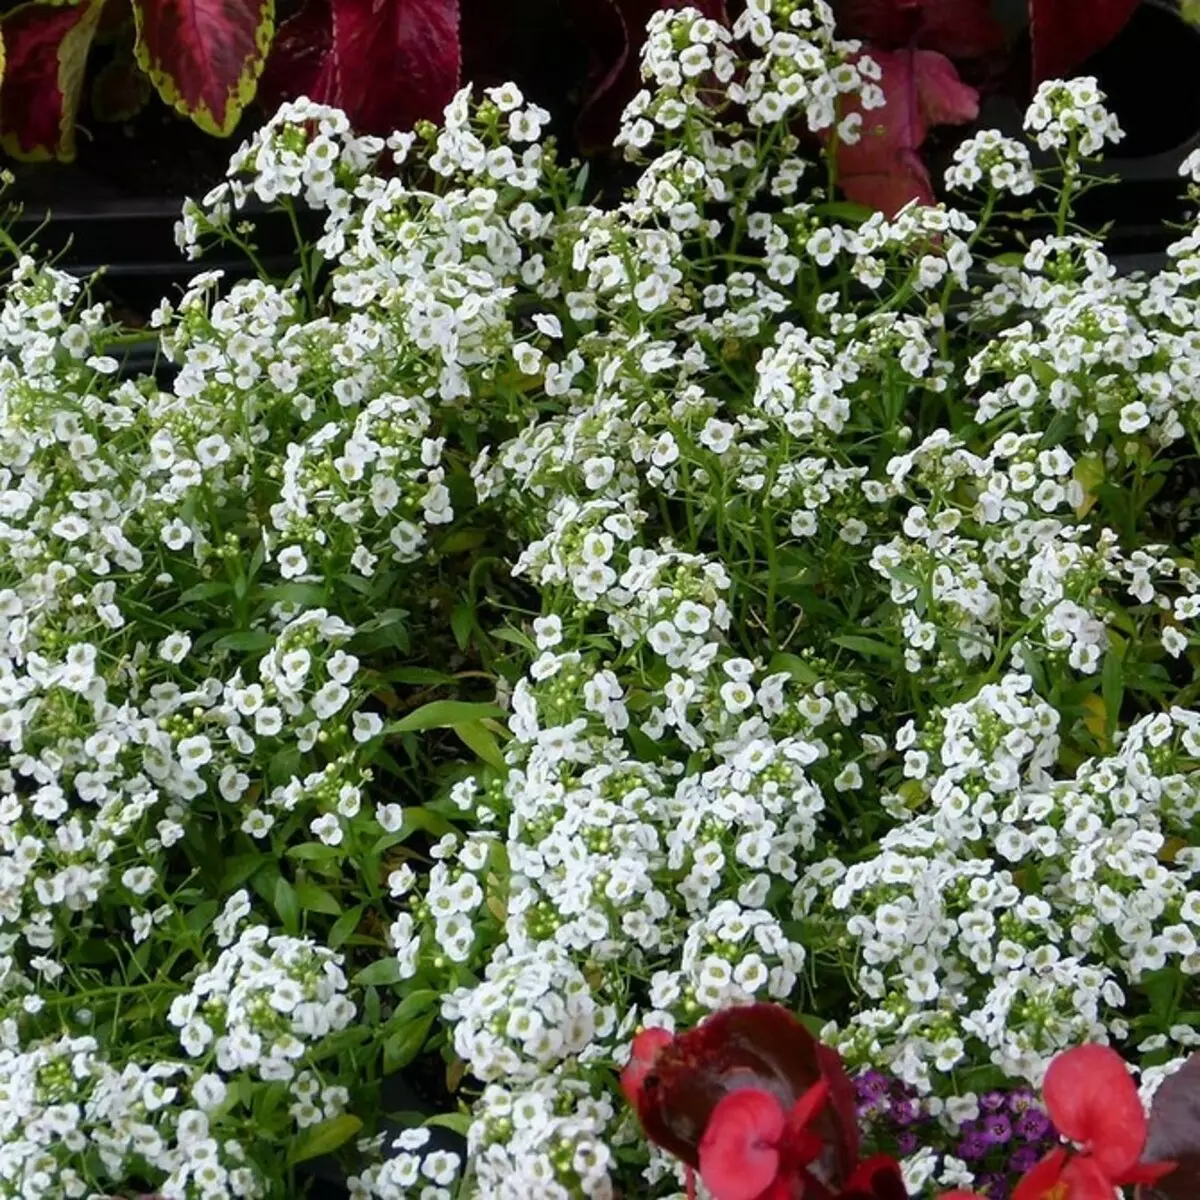 Neparasti ziedi jūsu dārzam: 7 šķirnes, kuras jūs neredzēsiet no kaimiņiem 27920_46